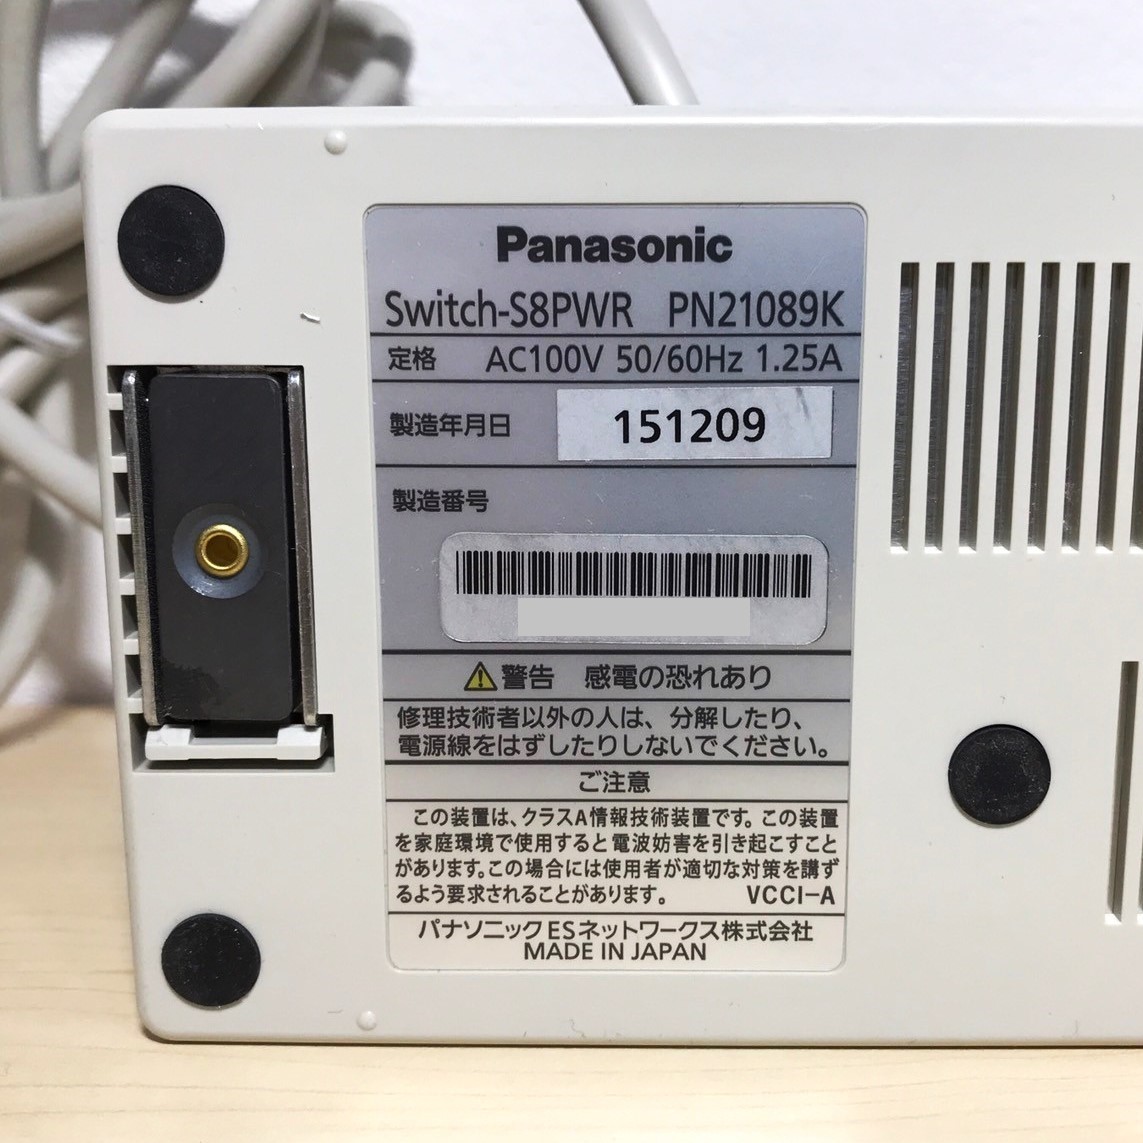 707【通電OK】Panasonic Switch-S8PWR PN21089 スイッチングハブ スイッチ switch 8ポート レイヤ2 PoE給電 IEEE802.3af パナソニック_画像9